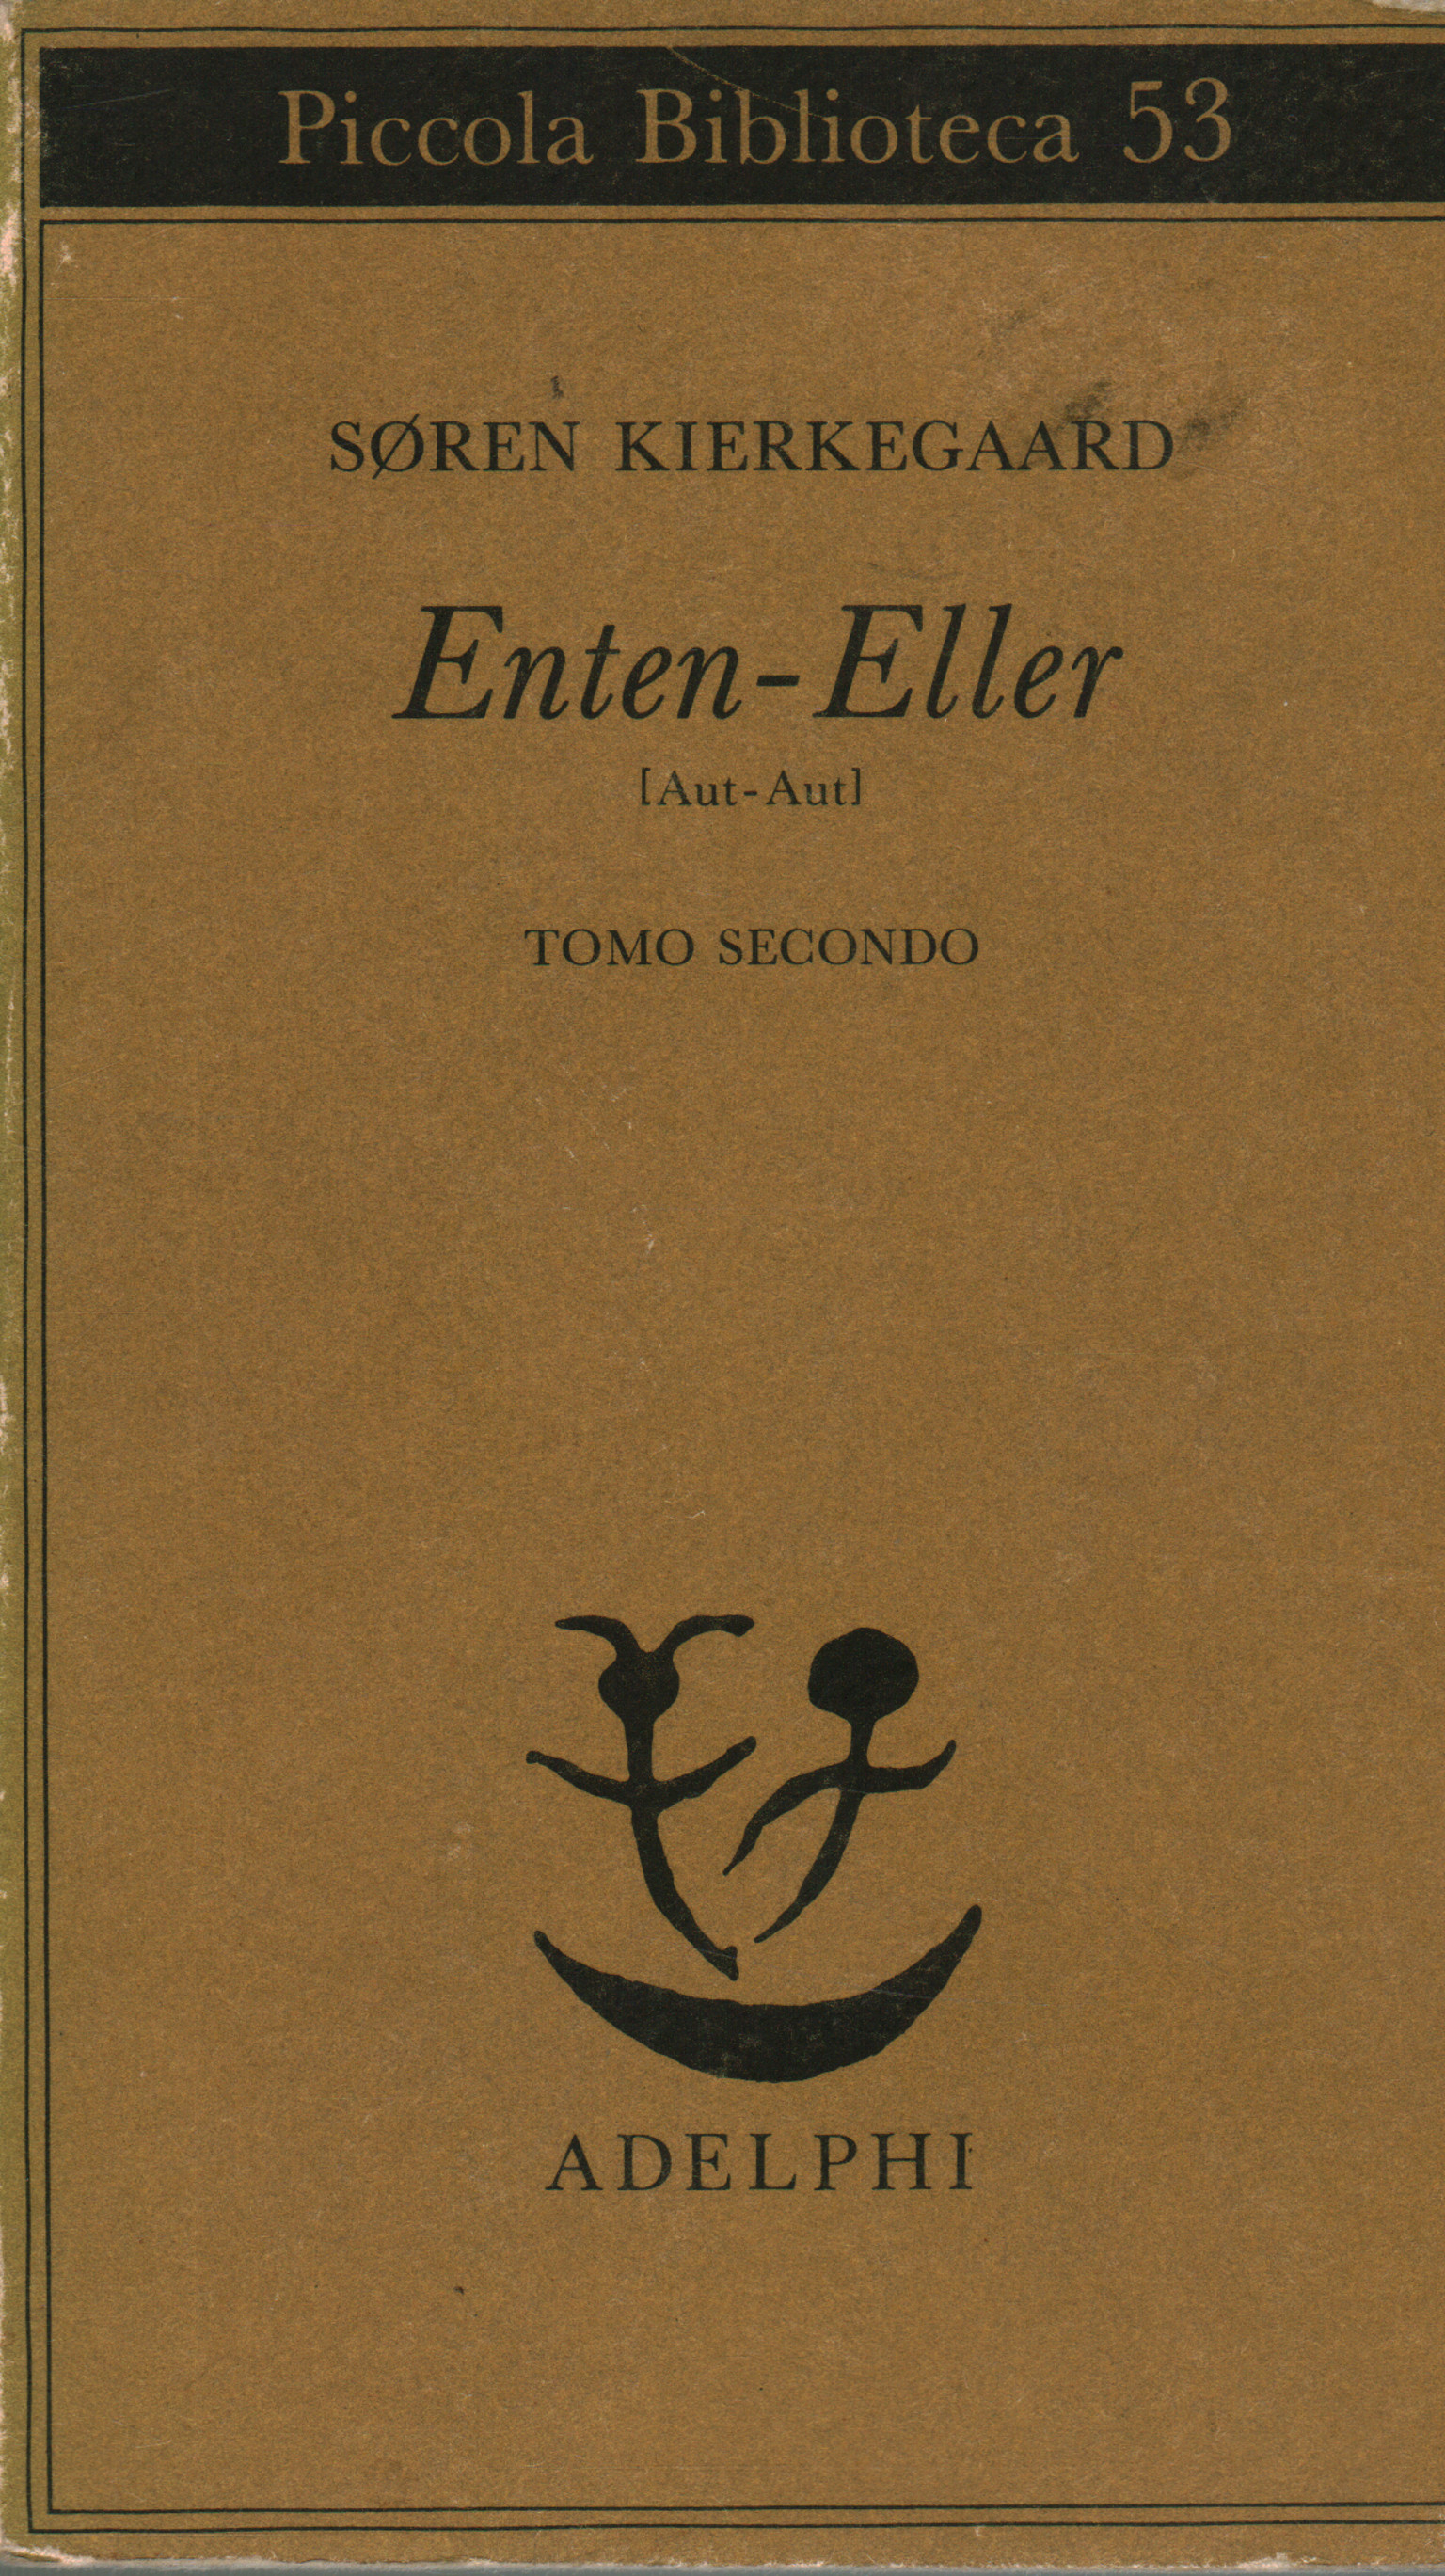 Enten - Eller. Volumen II, Søren Kierkegaard